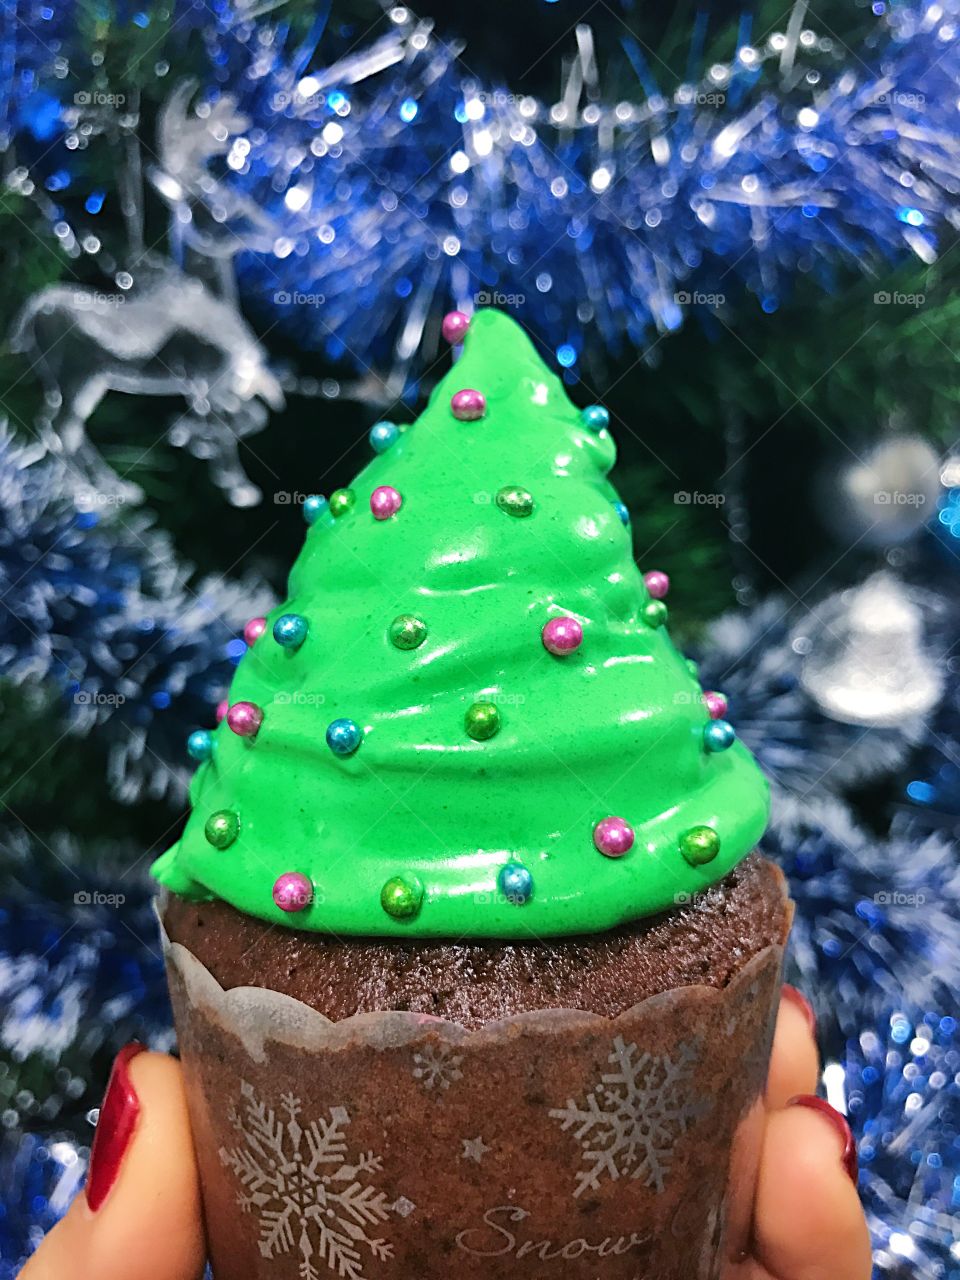 Christmas tree cupcake